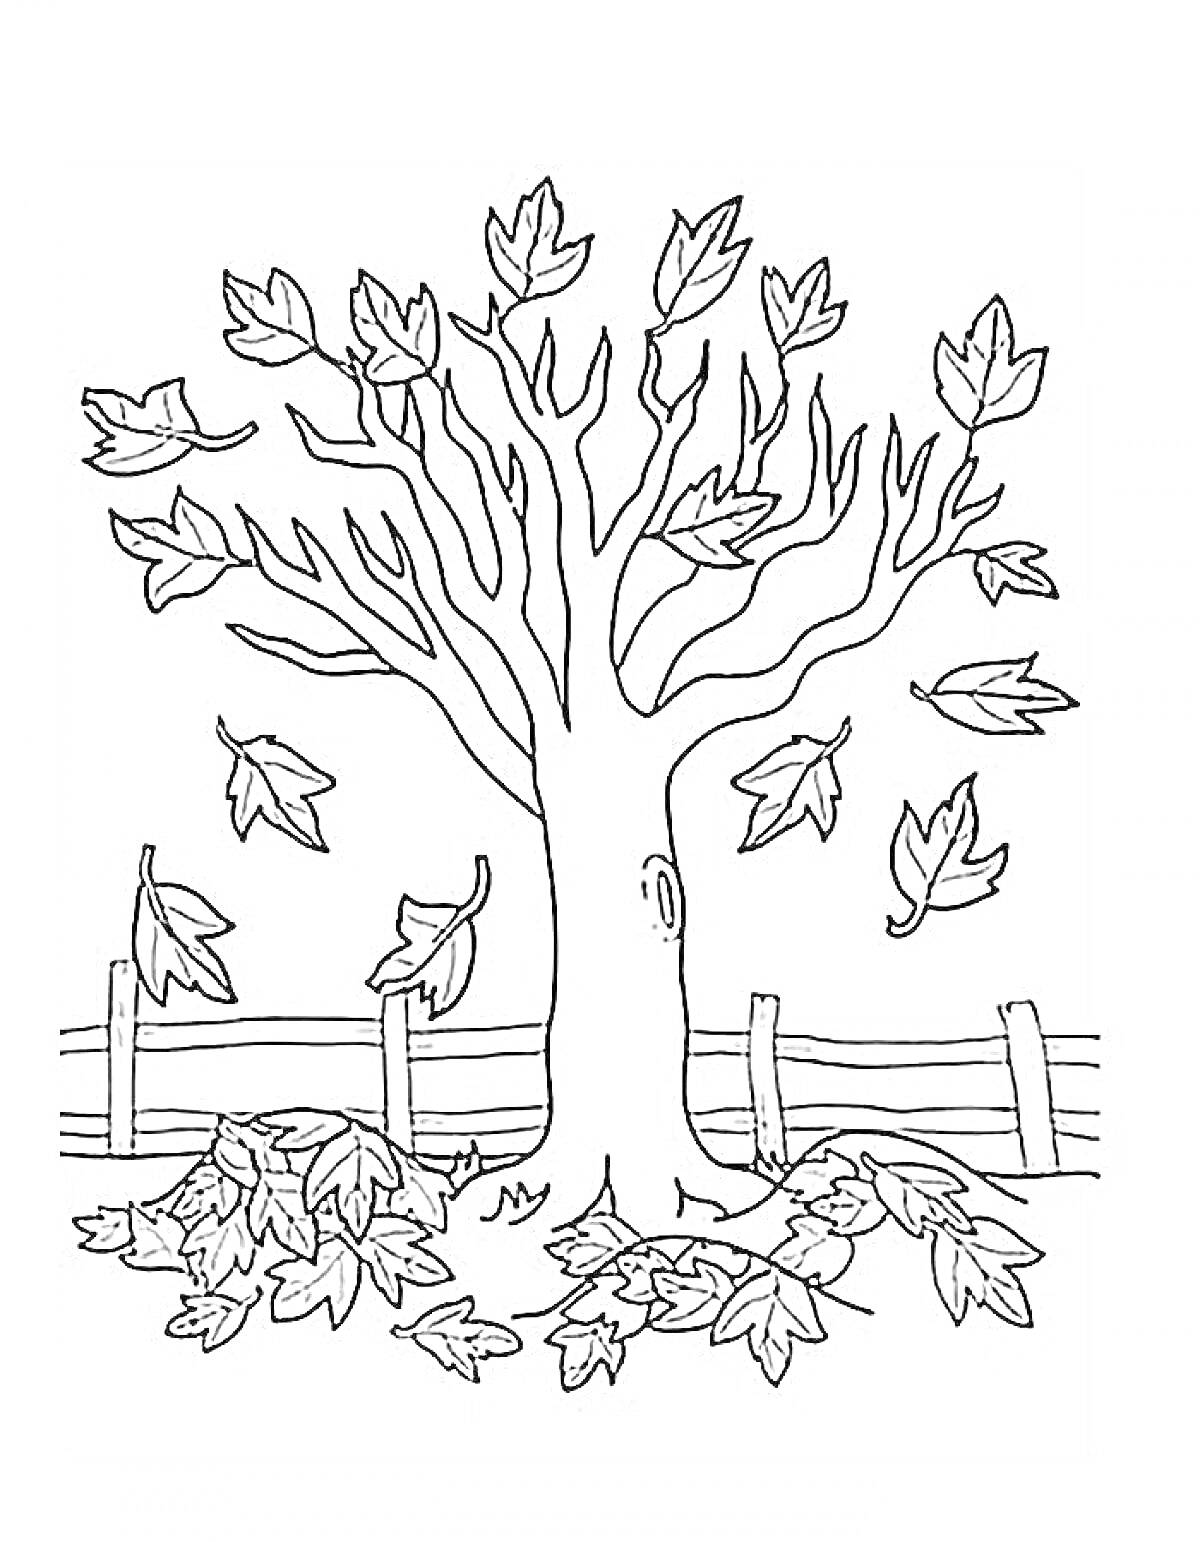 Раскраска Осеннее дерево с падающими и опавшими листьями возле забора